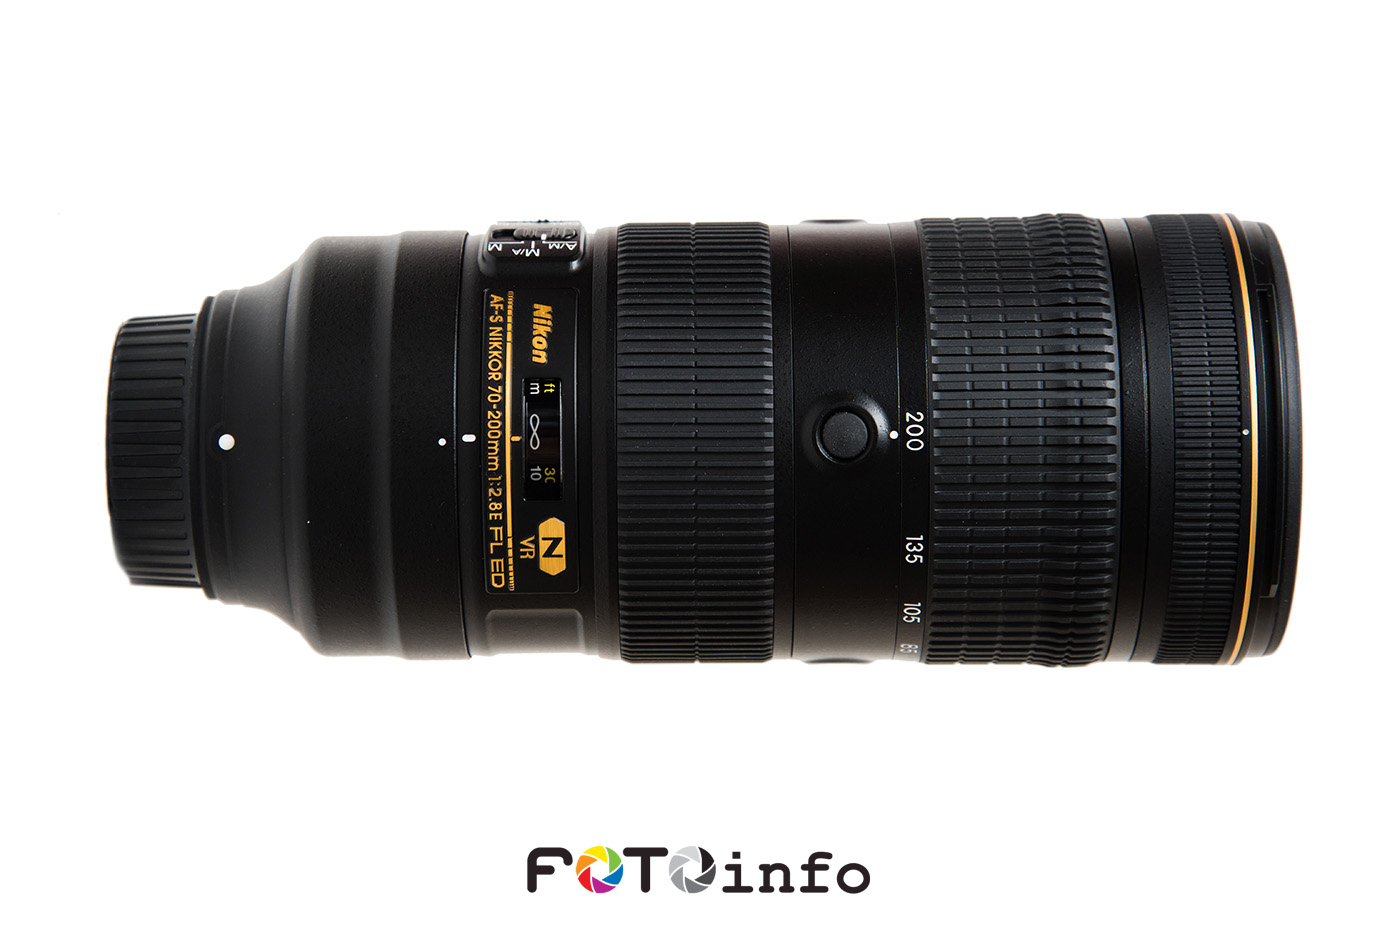 Nikon AF-S Nikkor 70-200mm f/2.8E FL ED VR lens review Nikon Rumors